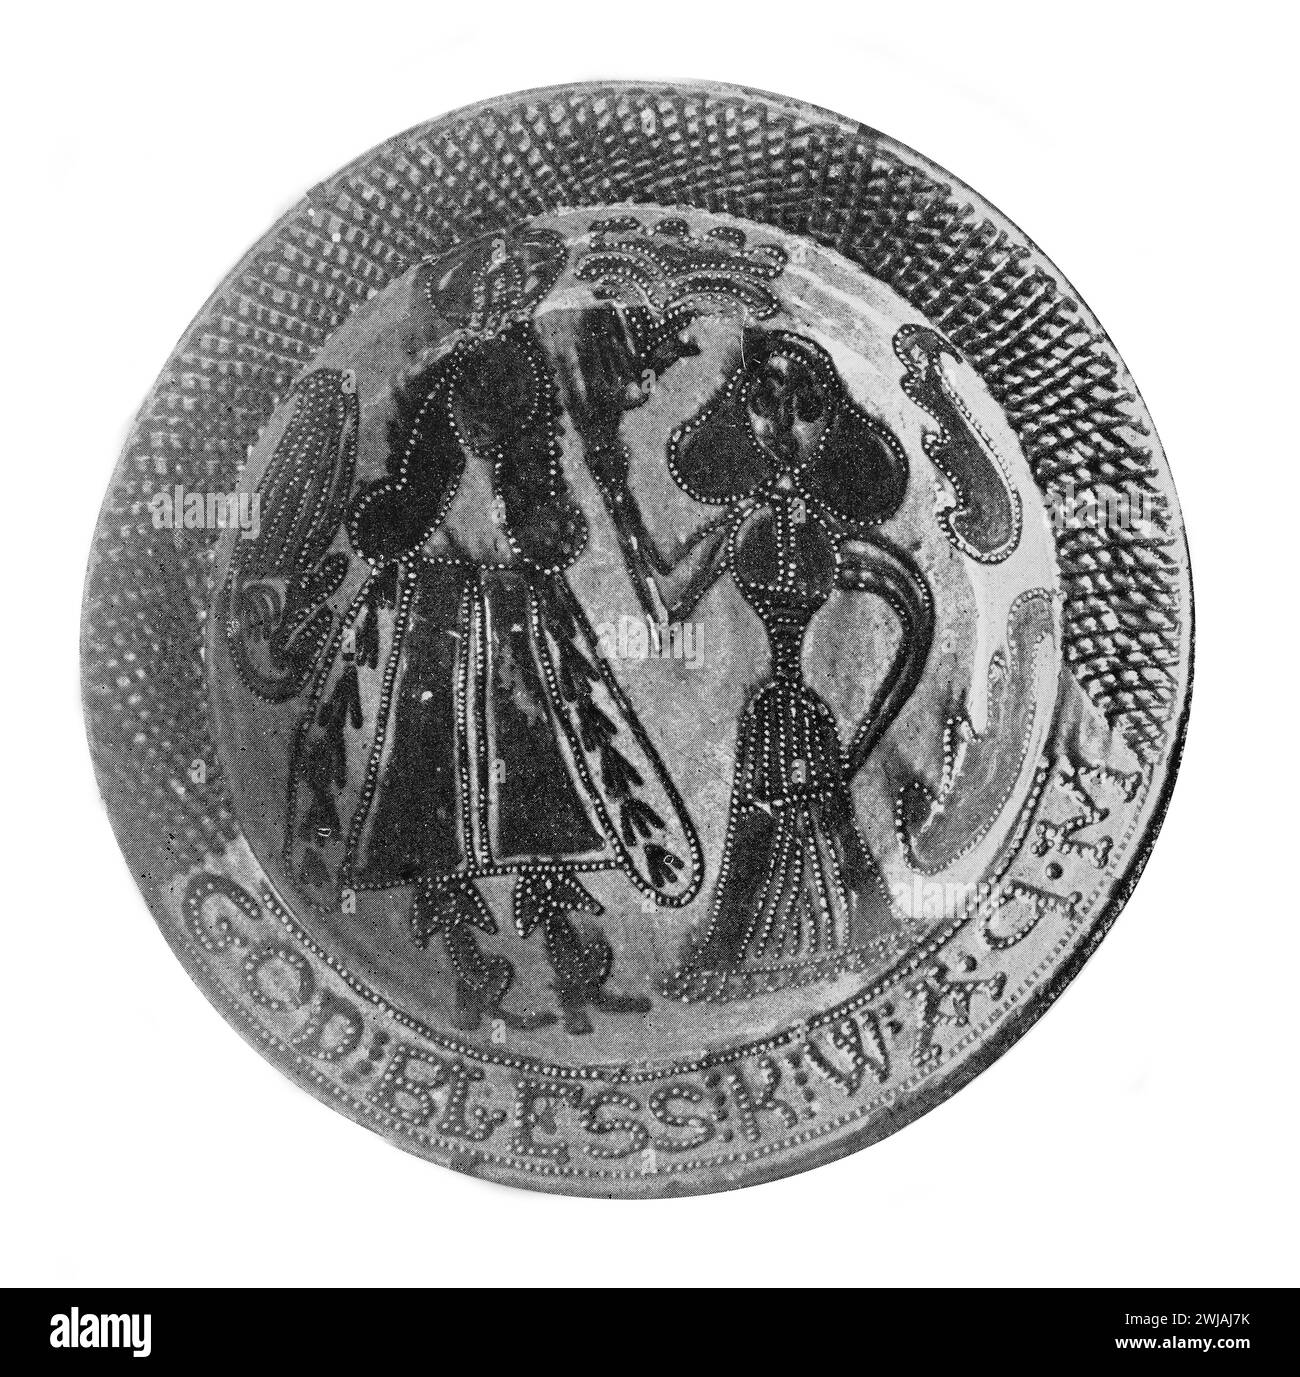 Assiette Toft Ware du XVIIe siècle représentant le roi William (Guillaume III d'Angleterre) et la reine Mary. Illustration en noir et blanc du Connoisseur, un magazine illustré pour collectionneurs Voll 3 (mai-août 1902) publié à Londres. Banque D'Images